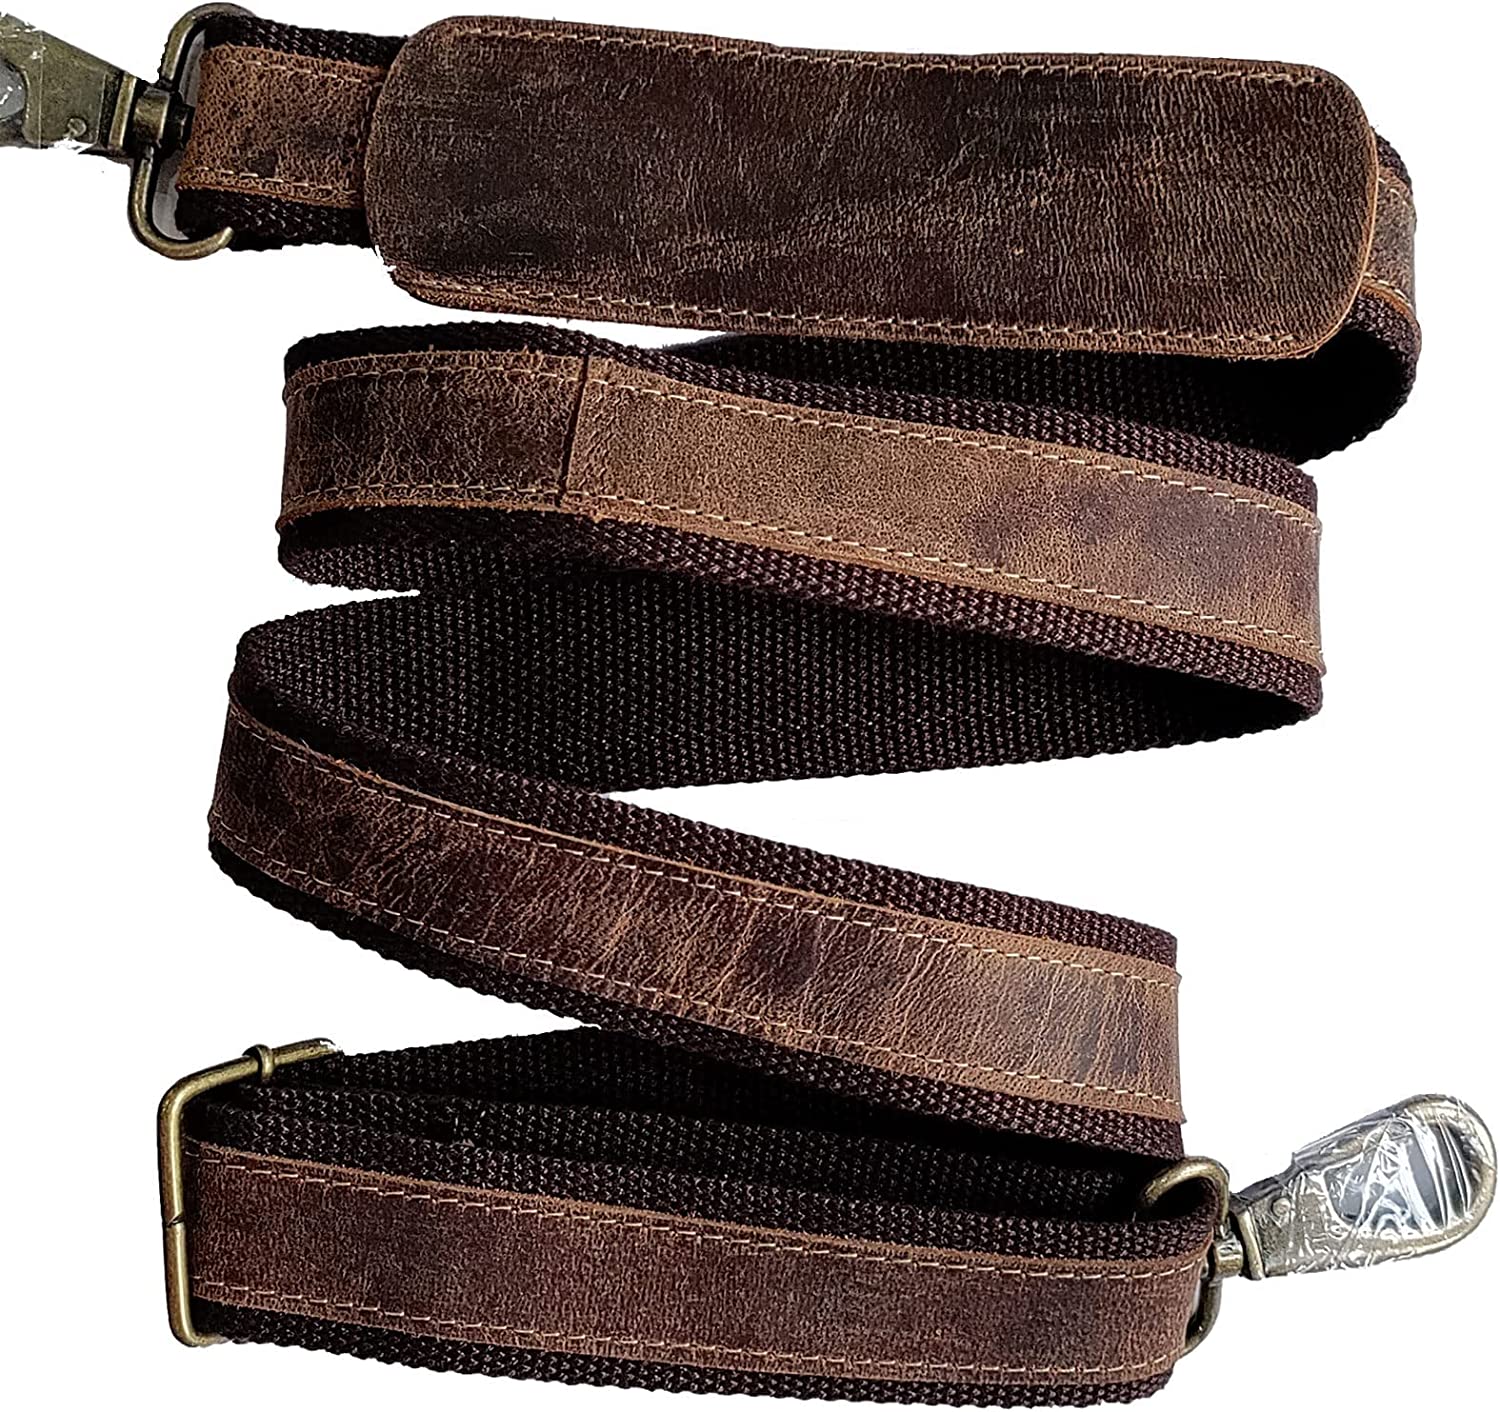 Leather Adjustable Shoulder Strap